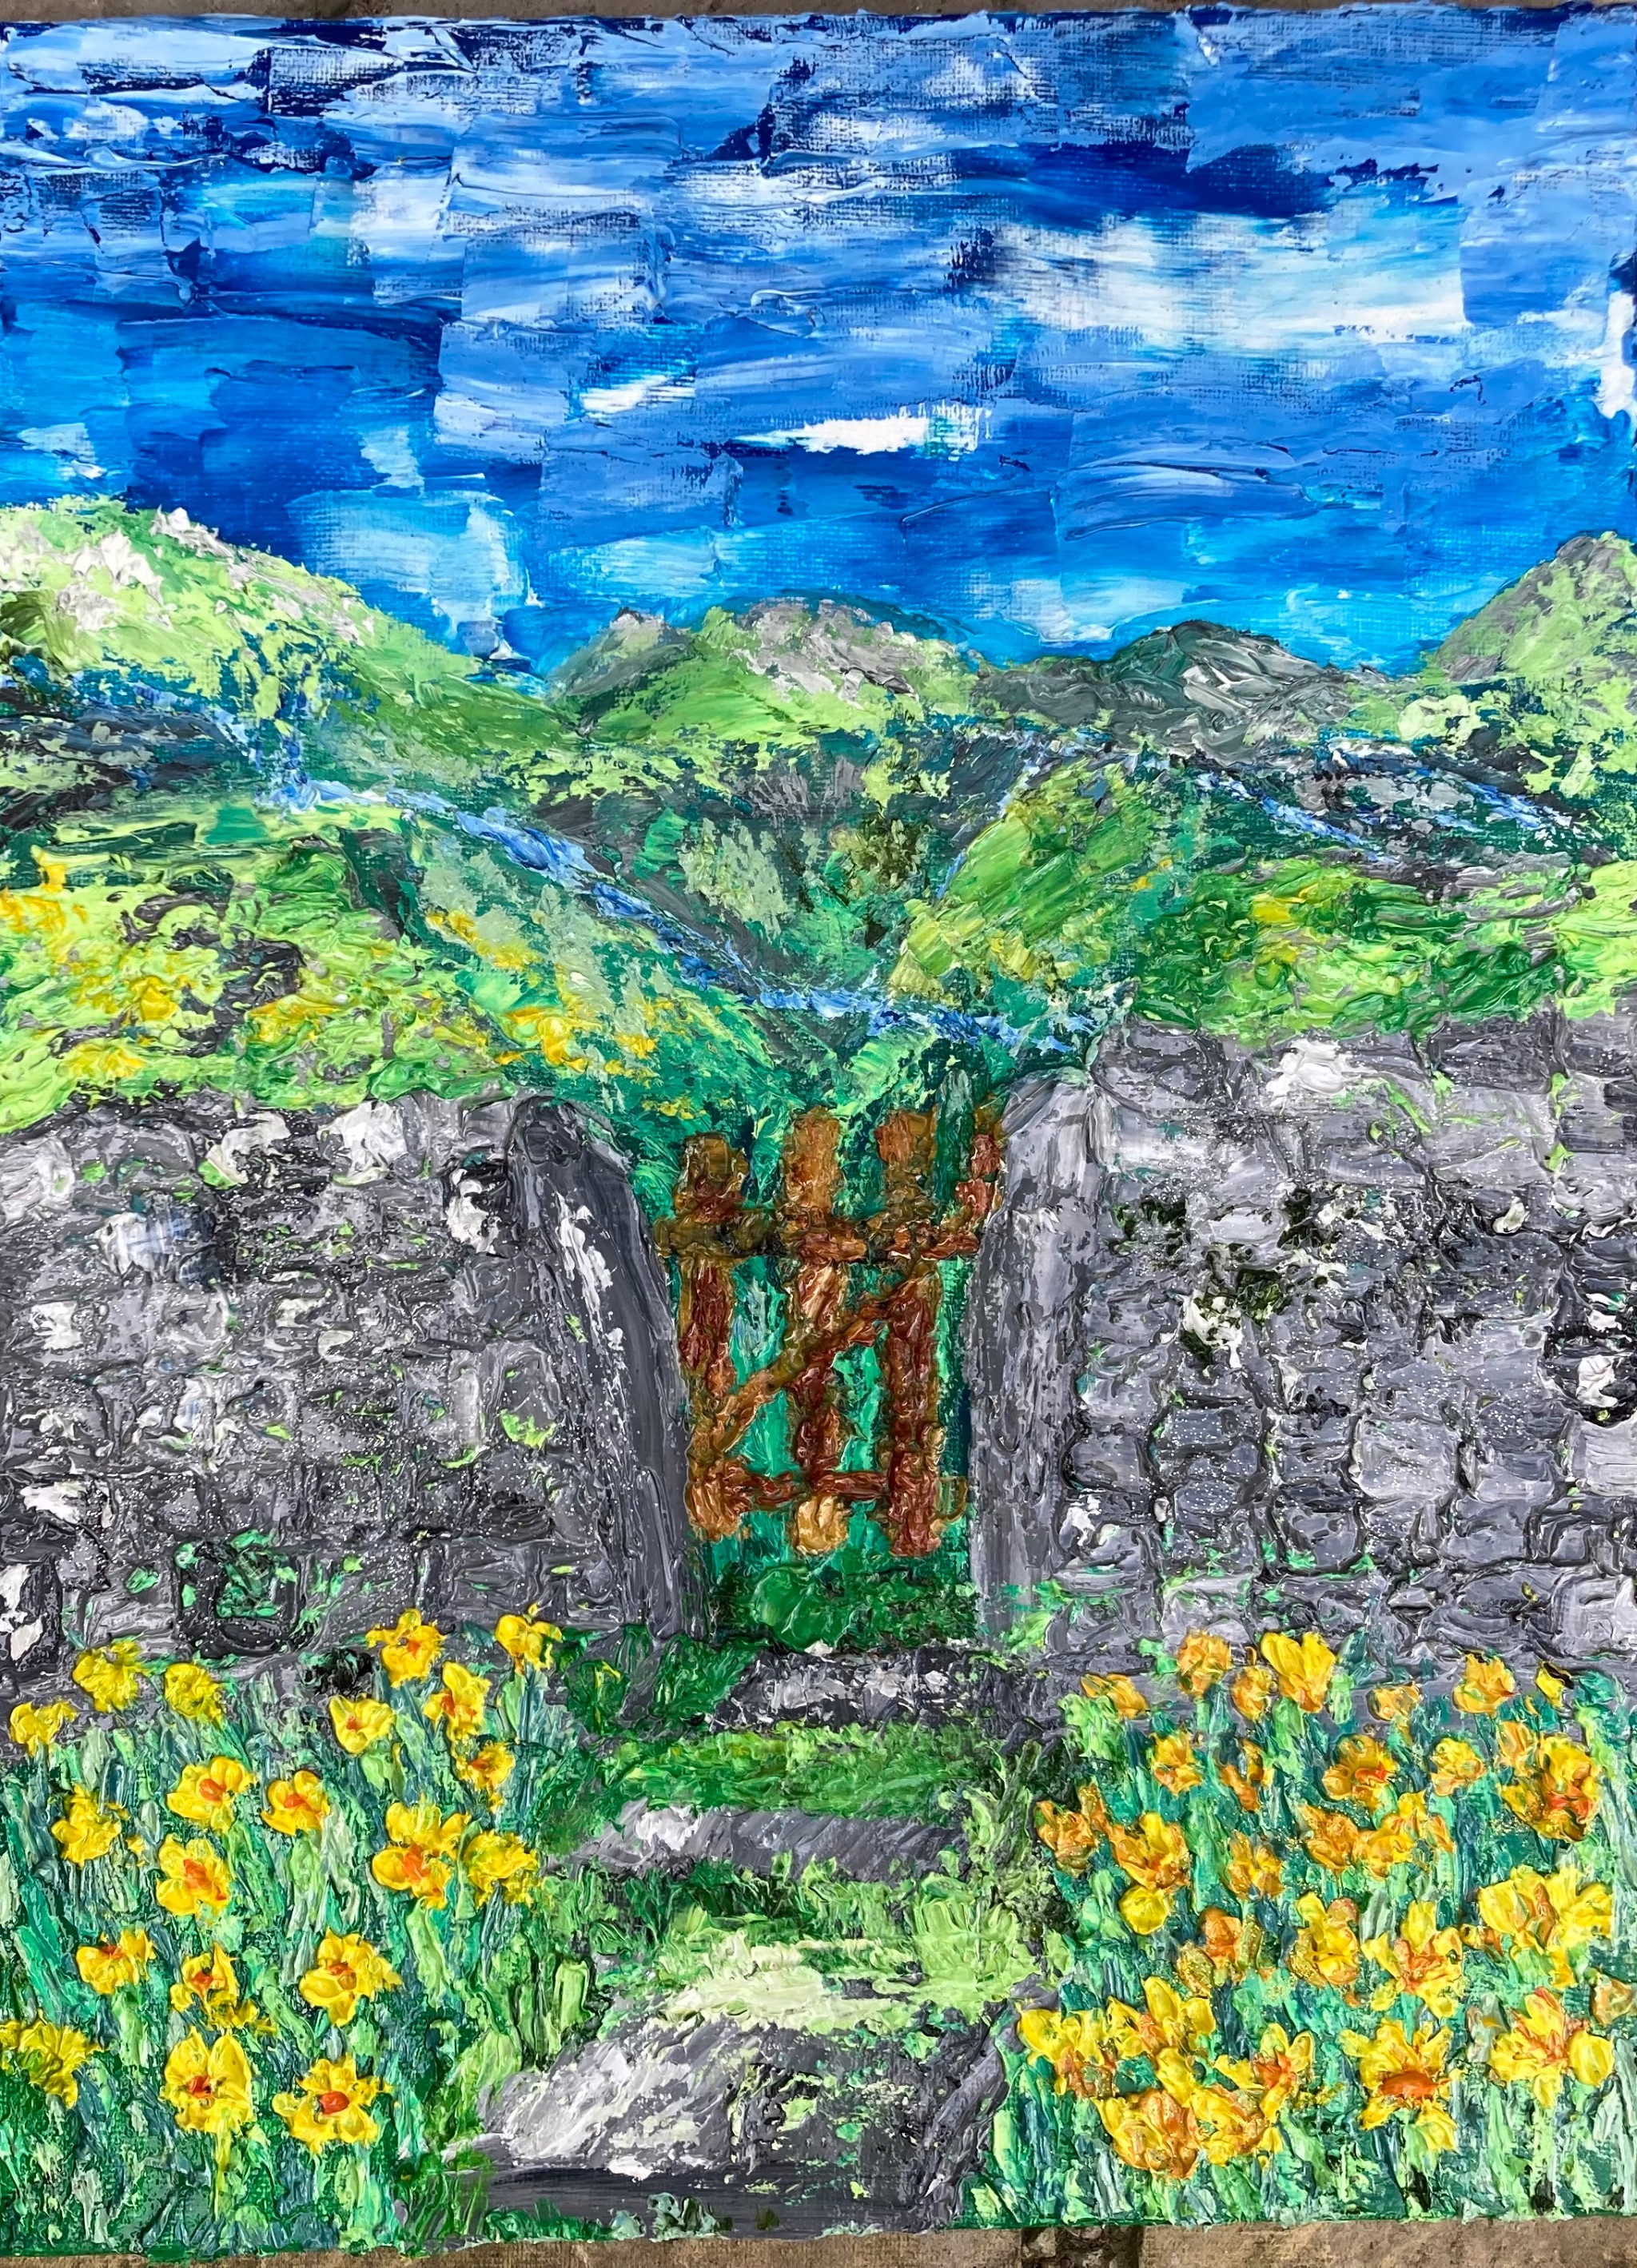 Daffodils by Aysgarth Gate. Part 2